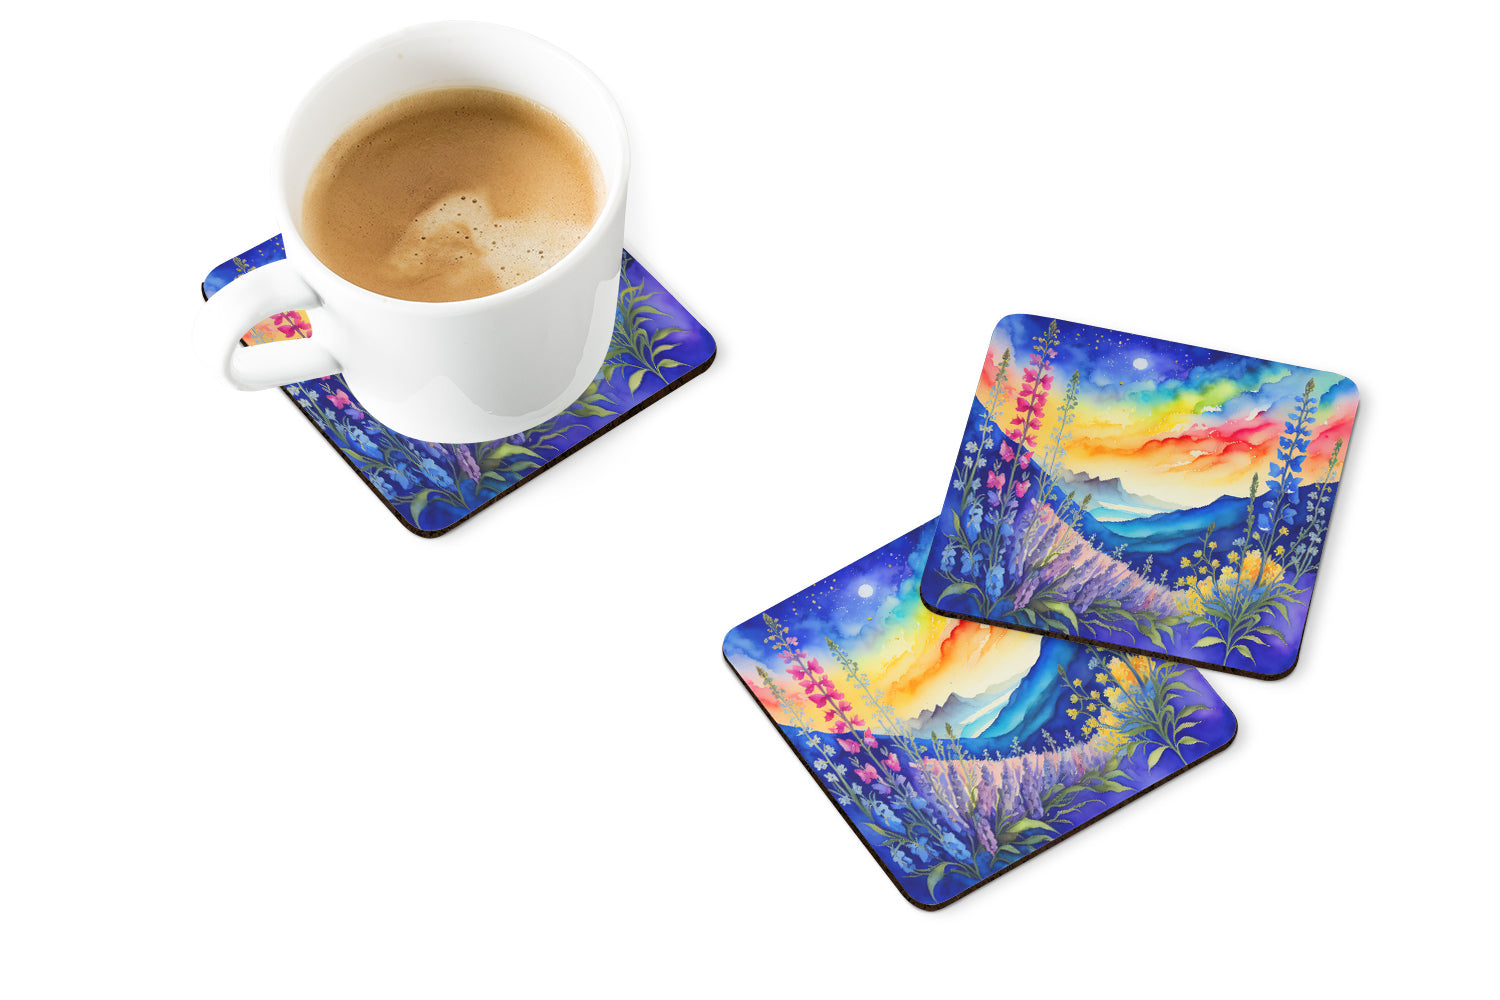 Colorful Delphinium Foam Coaster Set of 4